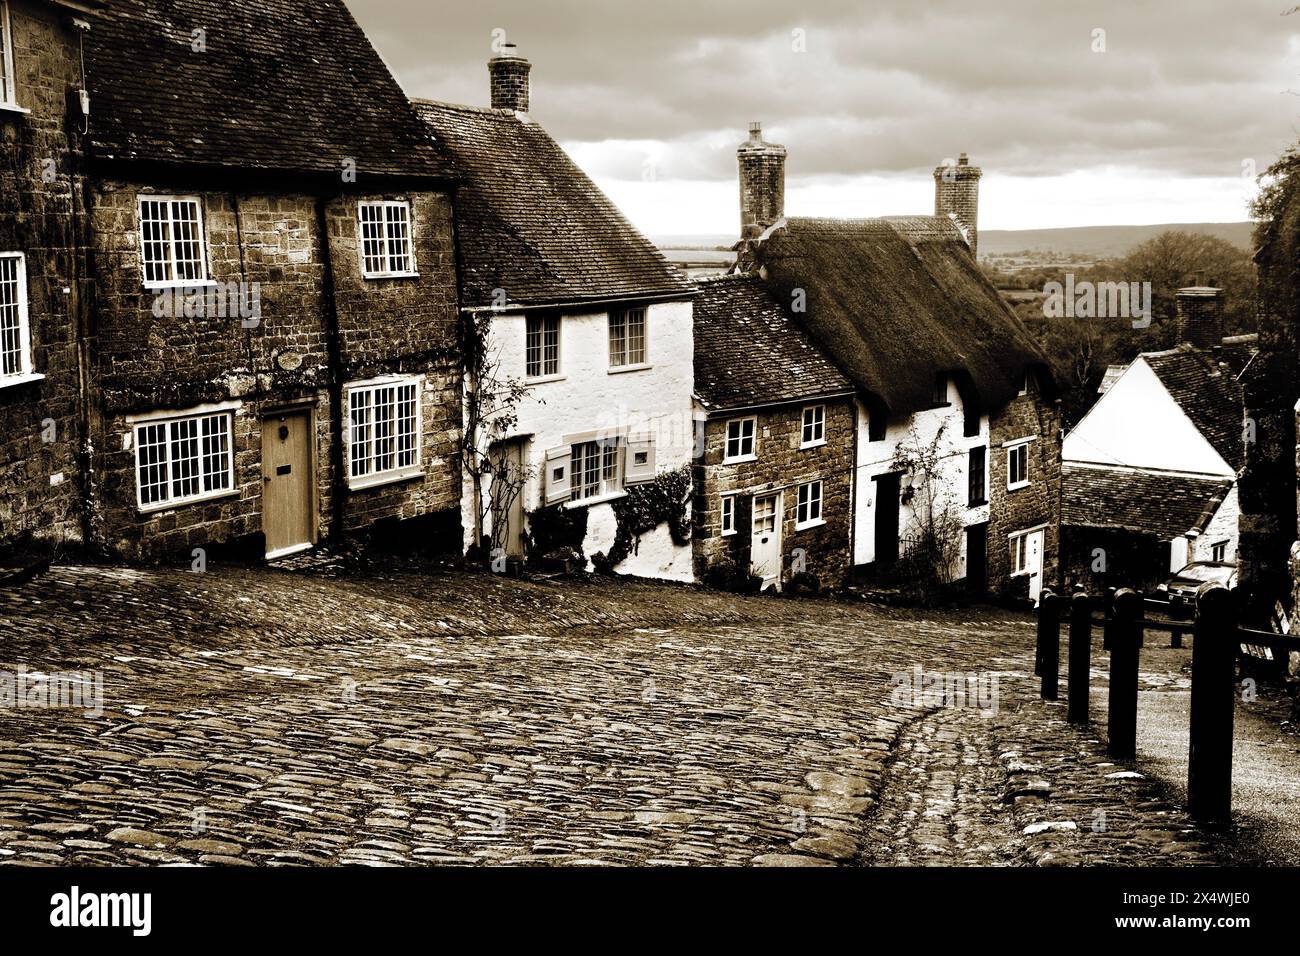 La vue sur Gold Hill, la rue pavée escarpée de Shaftesbury, Dorset utilisée pour la publicité Hovis des années 1970, peut-être l’une des plus nostalgiques d’Angleterre Banque D'Images